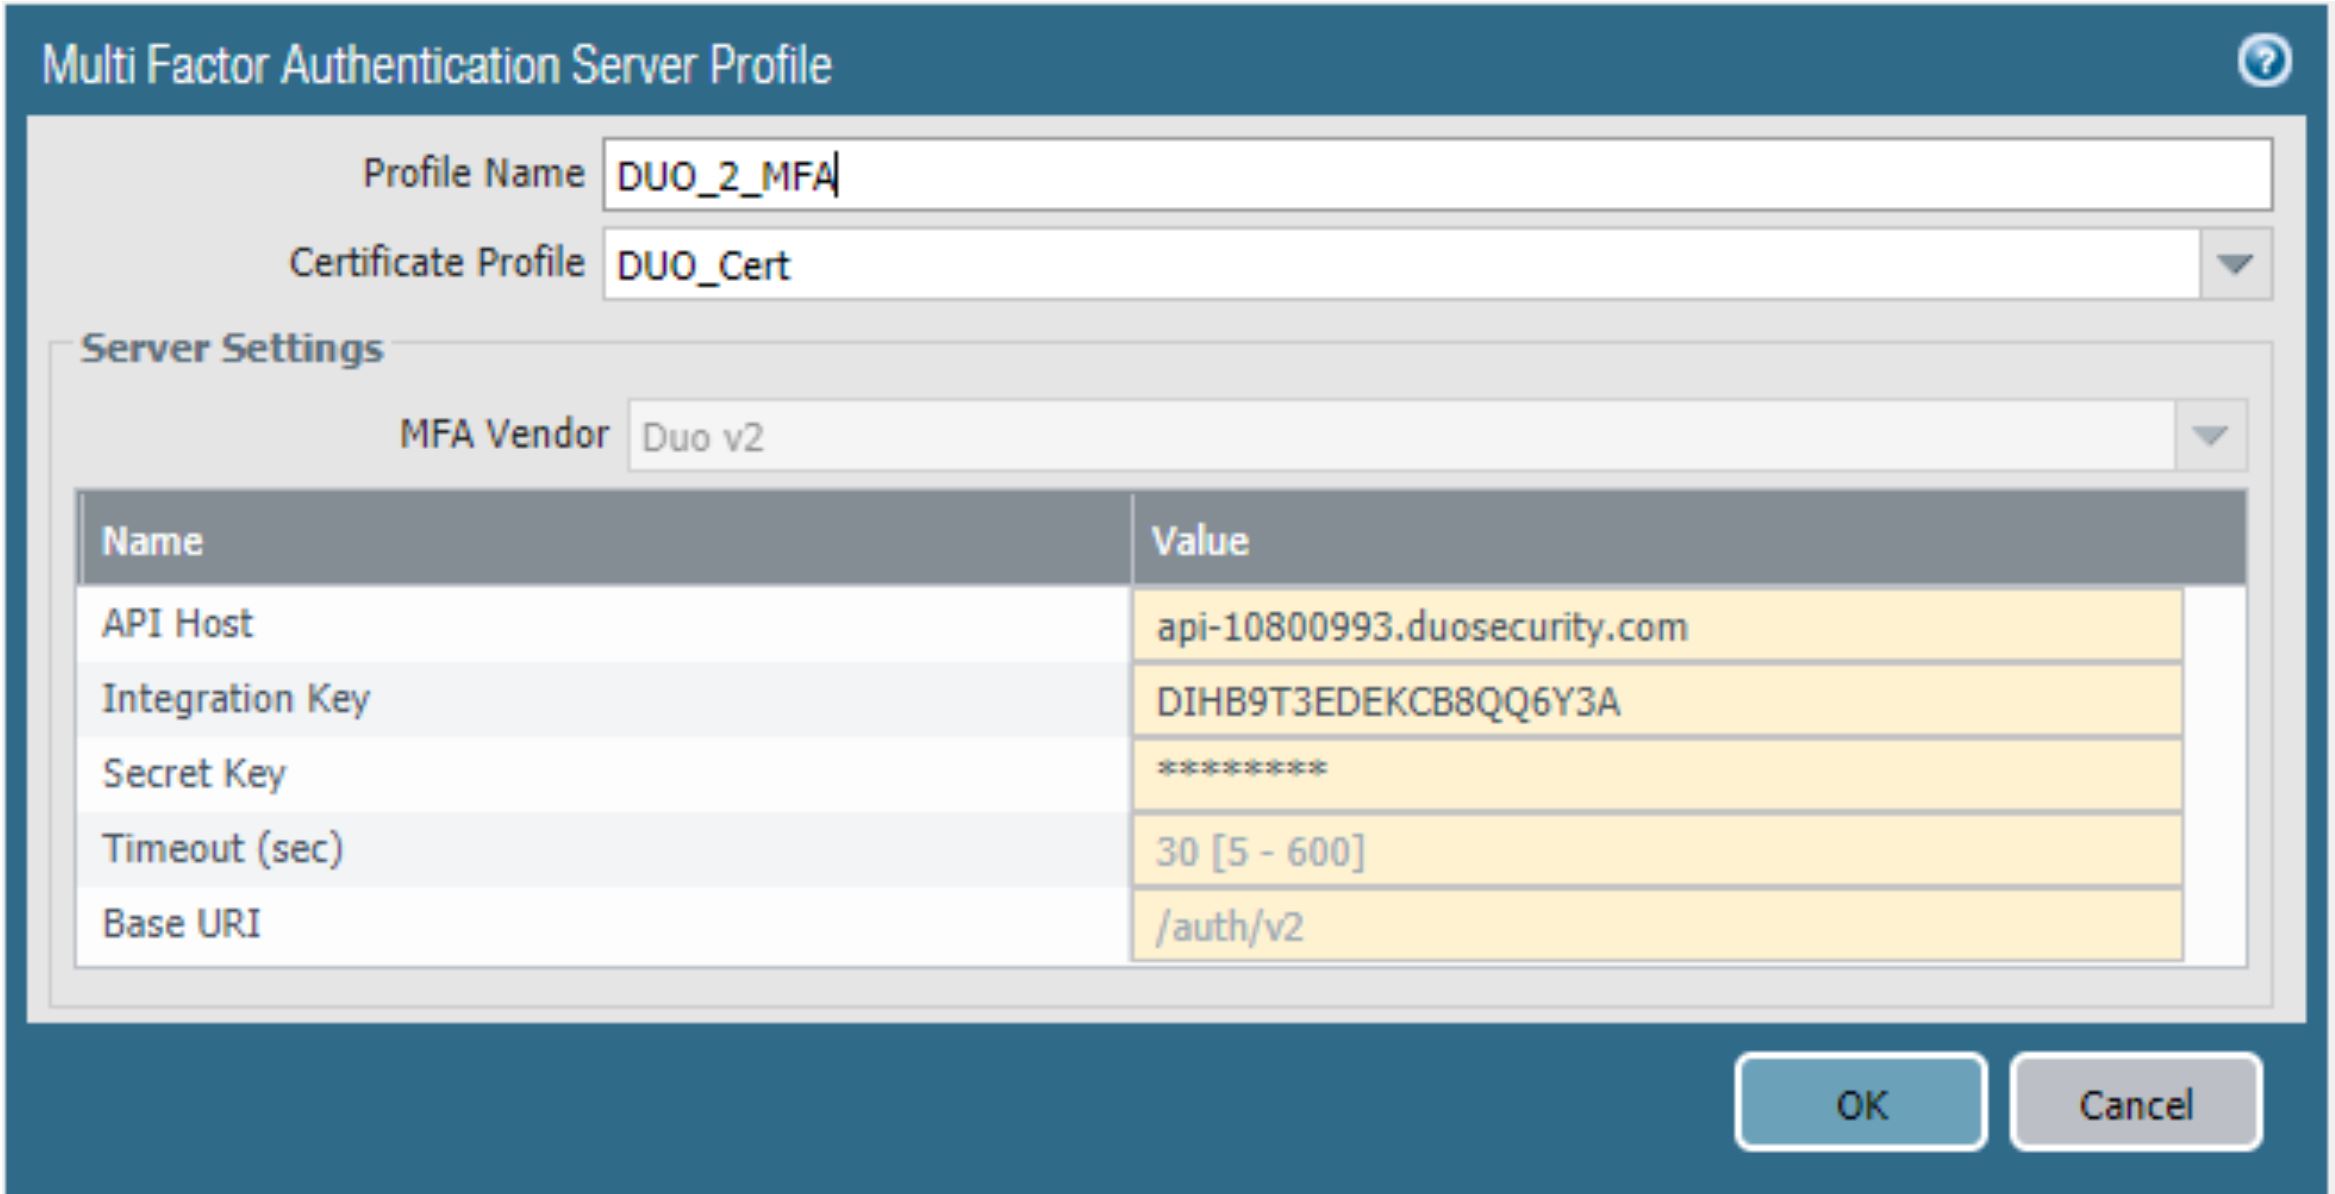 Dieses Bild zeigt das Multi Factor Authentication Server-Profil